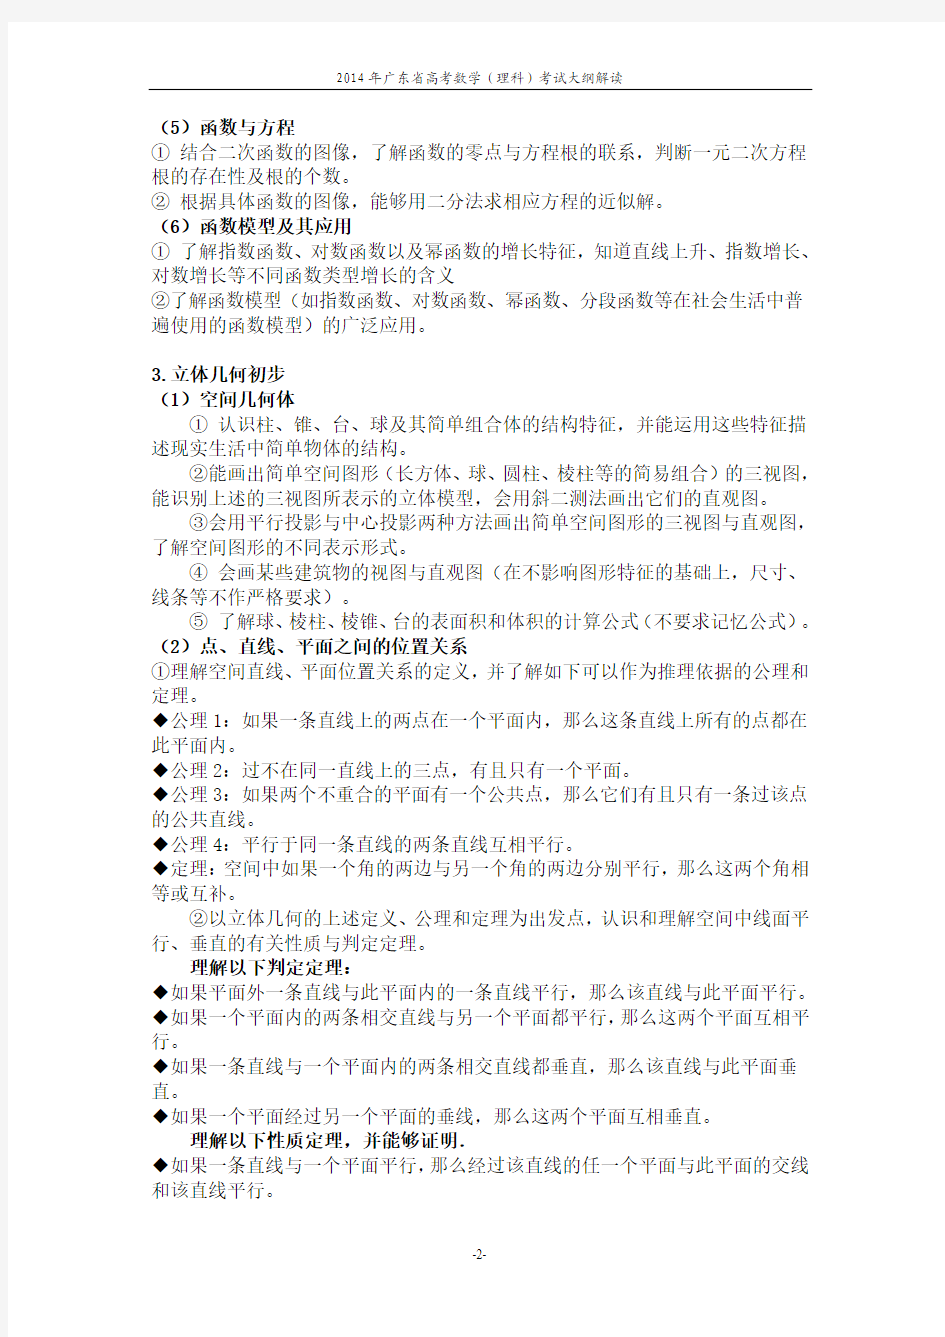 2014年广东省高考数学(理科)考试大纲的说明